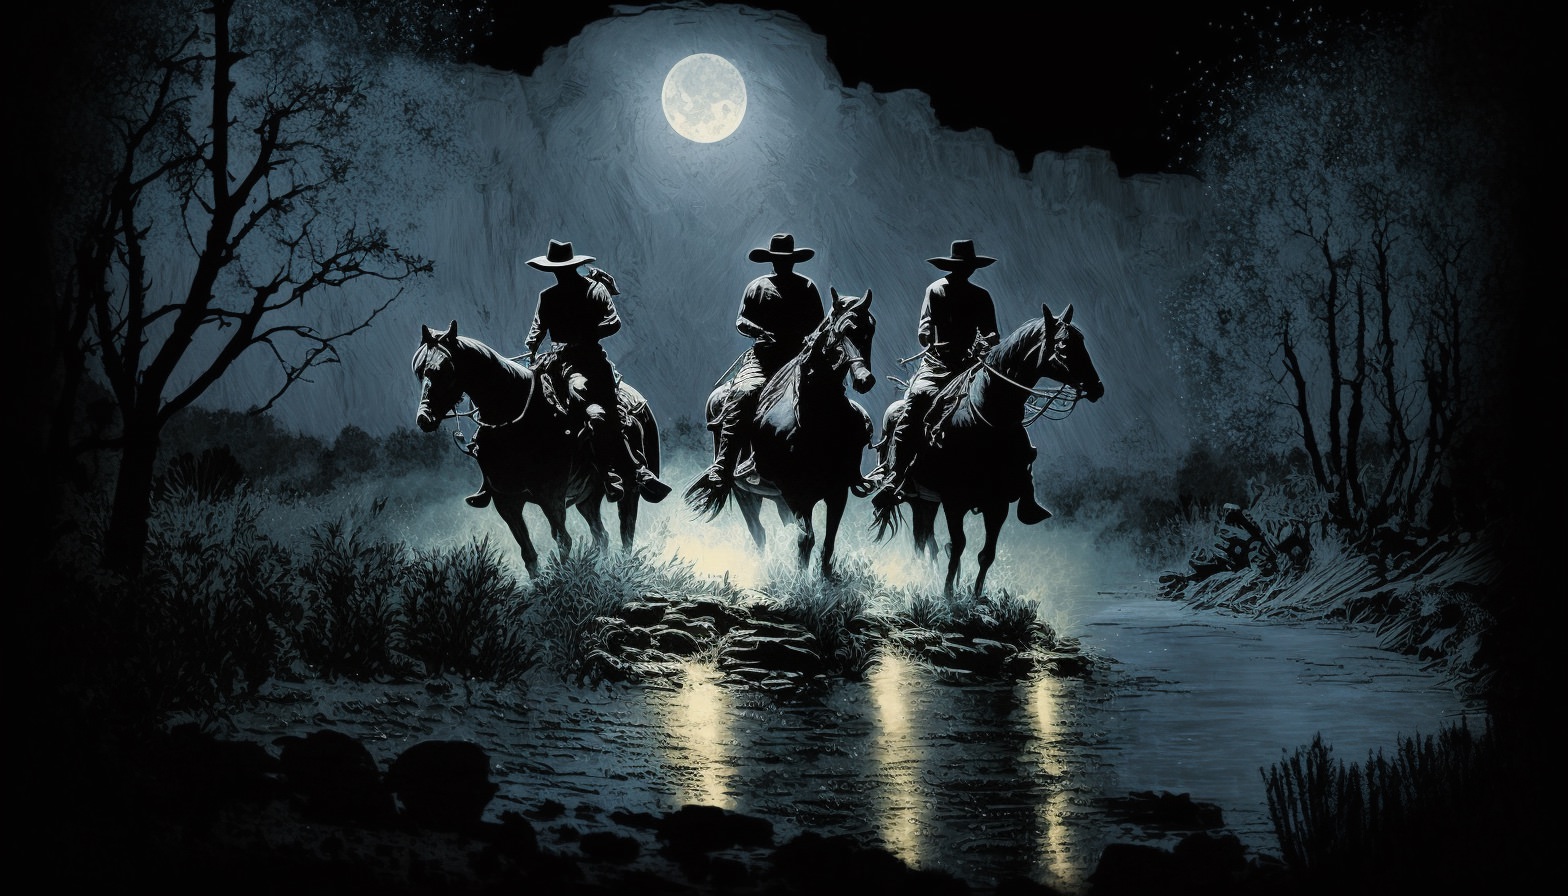 Cowboys wading a river at night